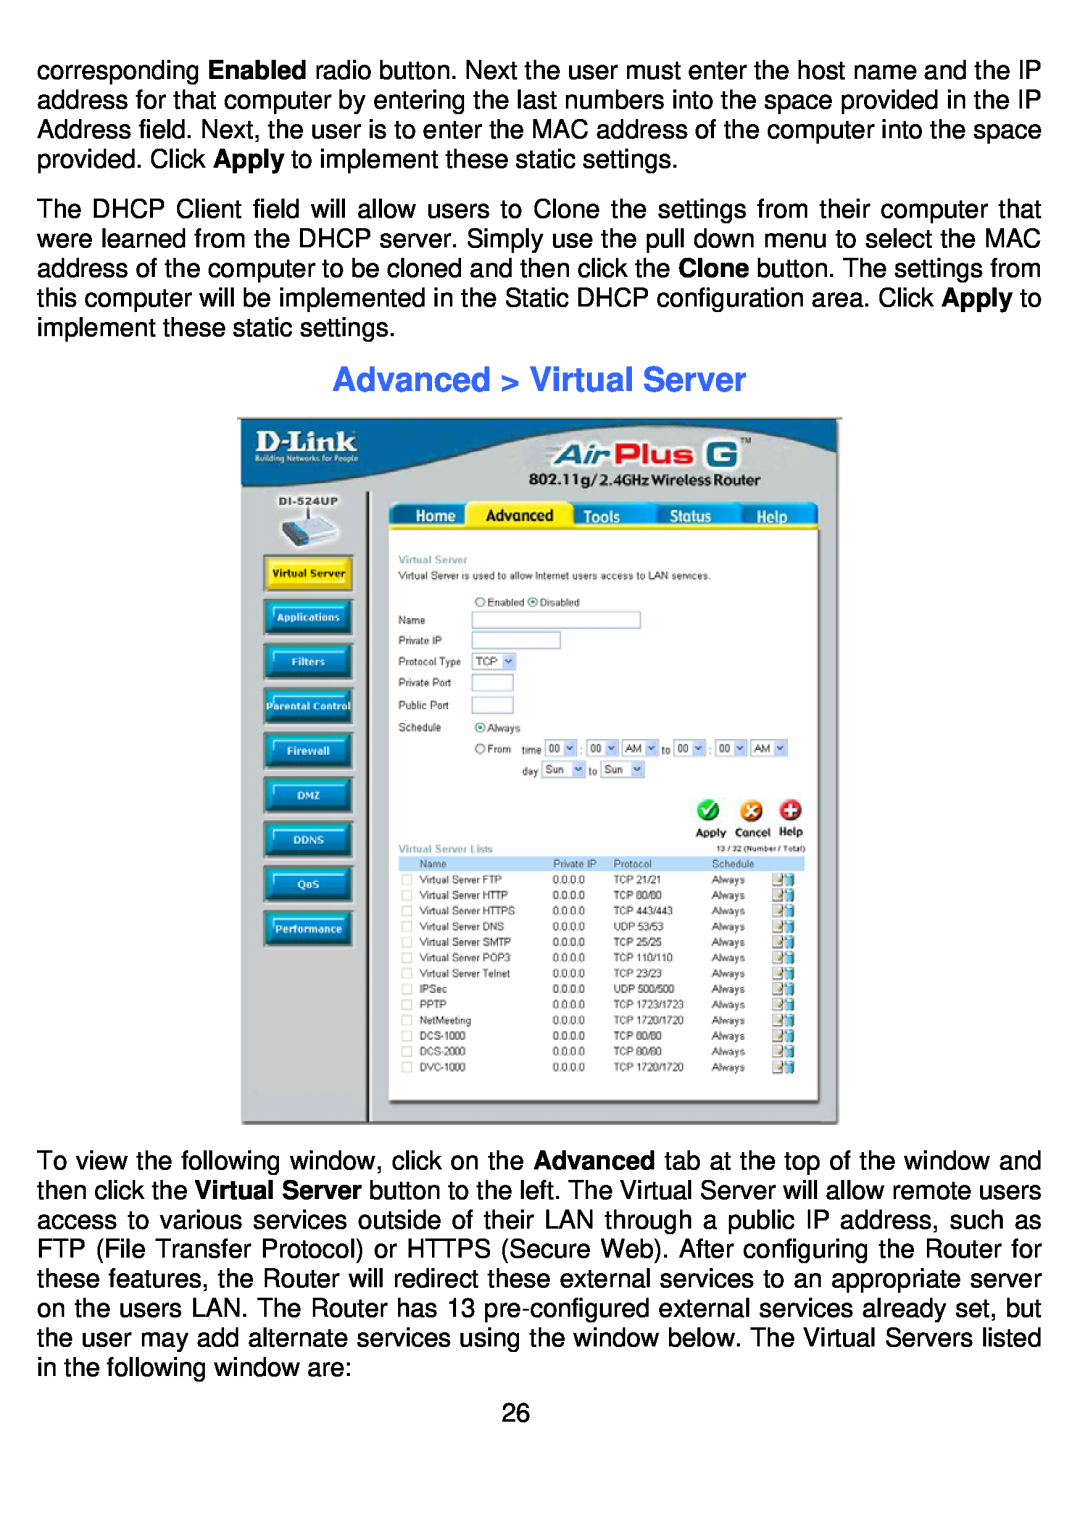 D-Link DI-524UP manual Advanced Virtual Server 